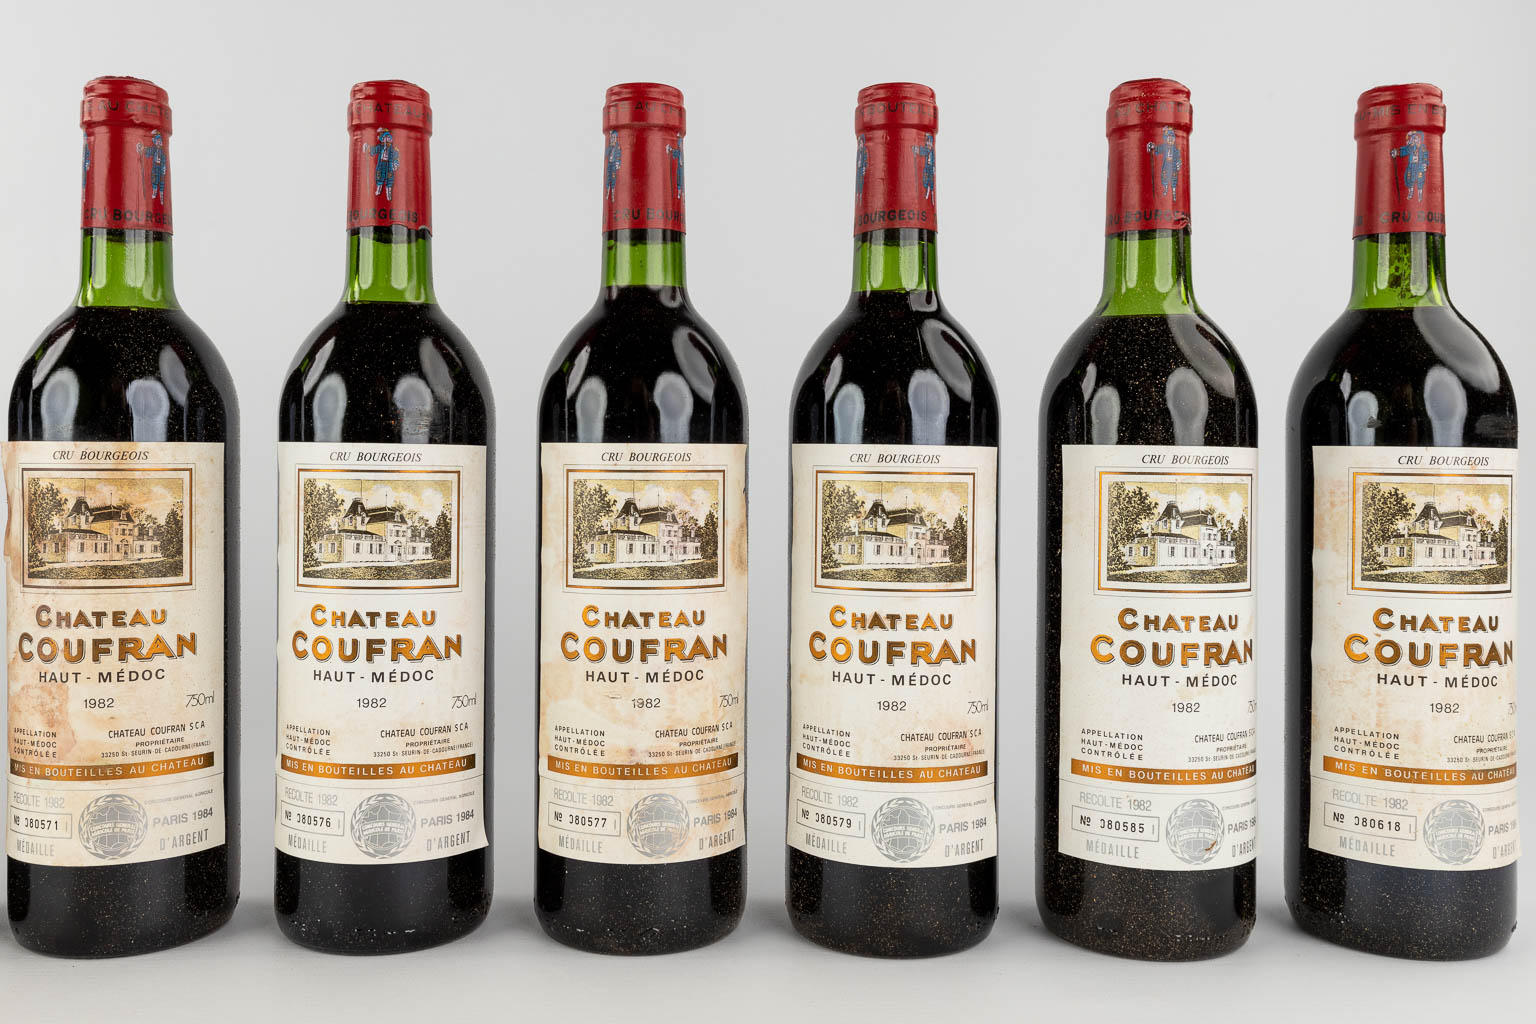 Château Coufran Haut Médoc, 1982, 12 bottles (2 chests)